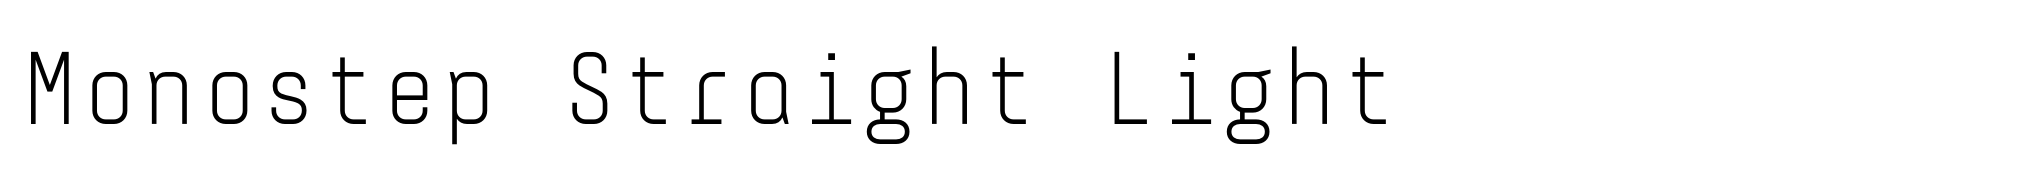 Monostep Straight Light image